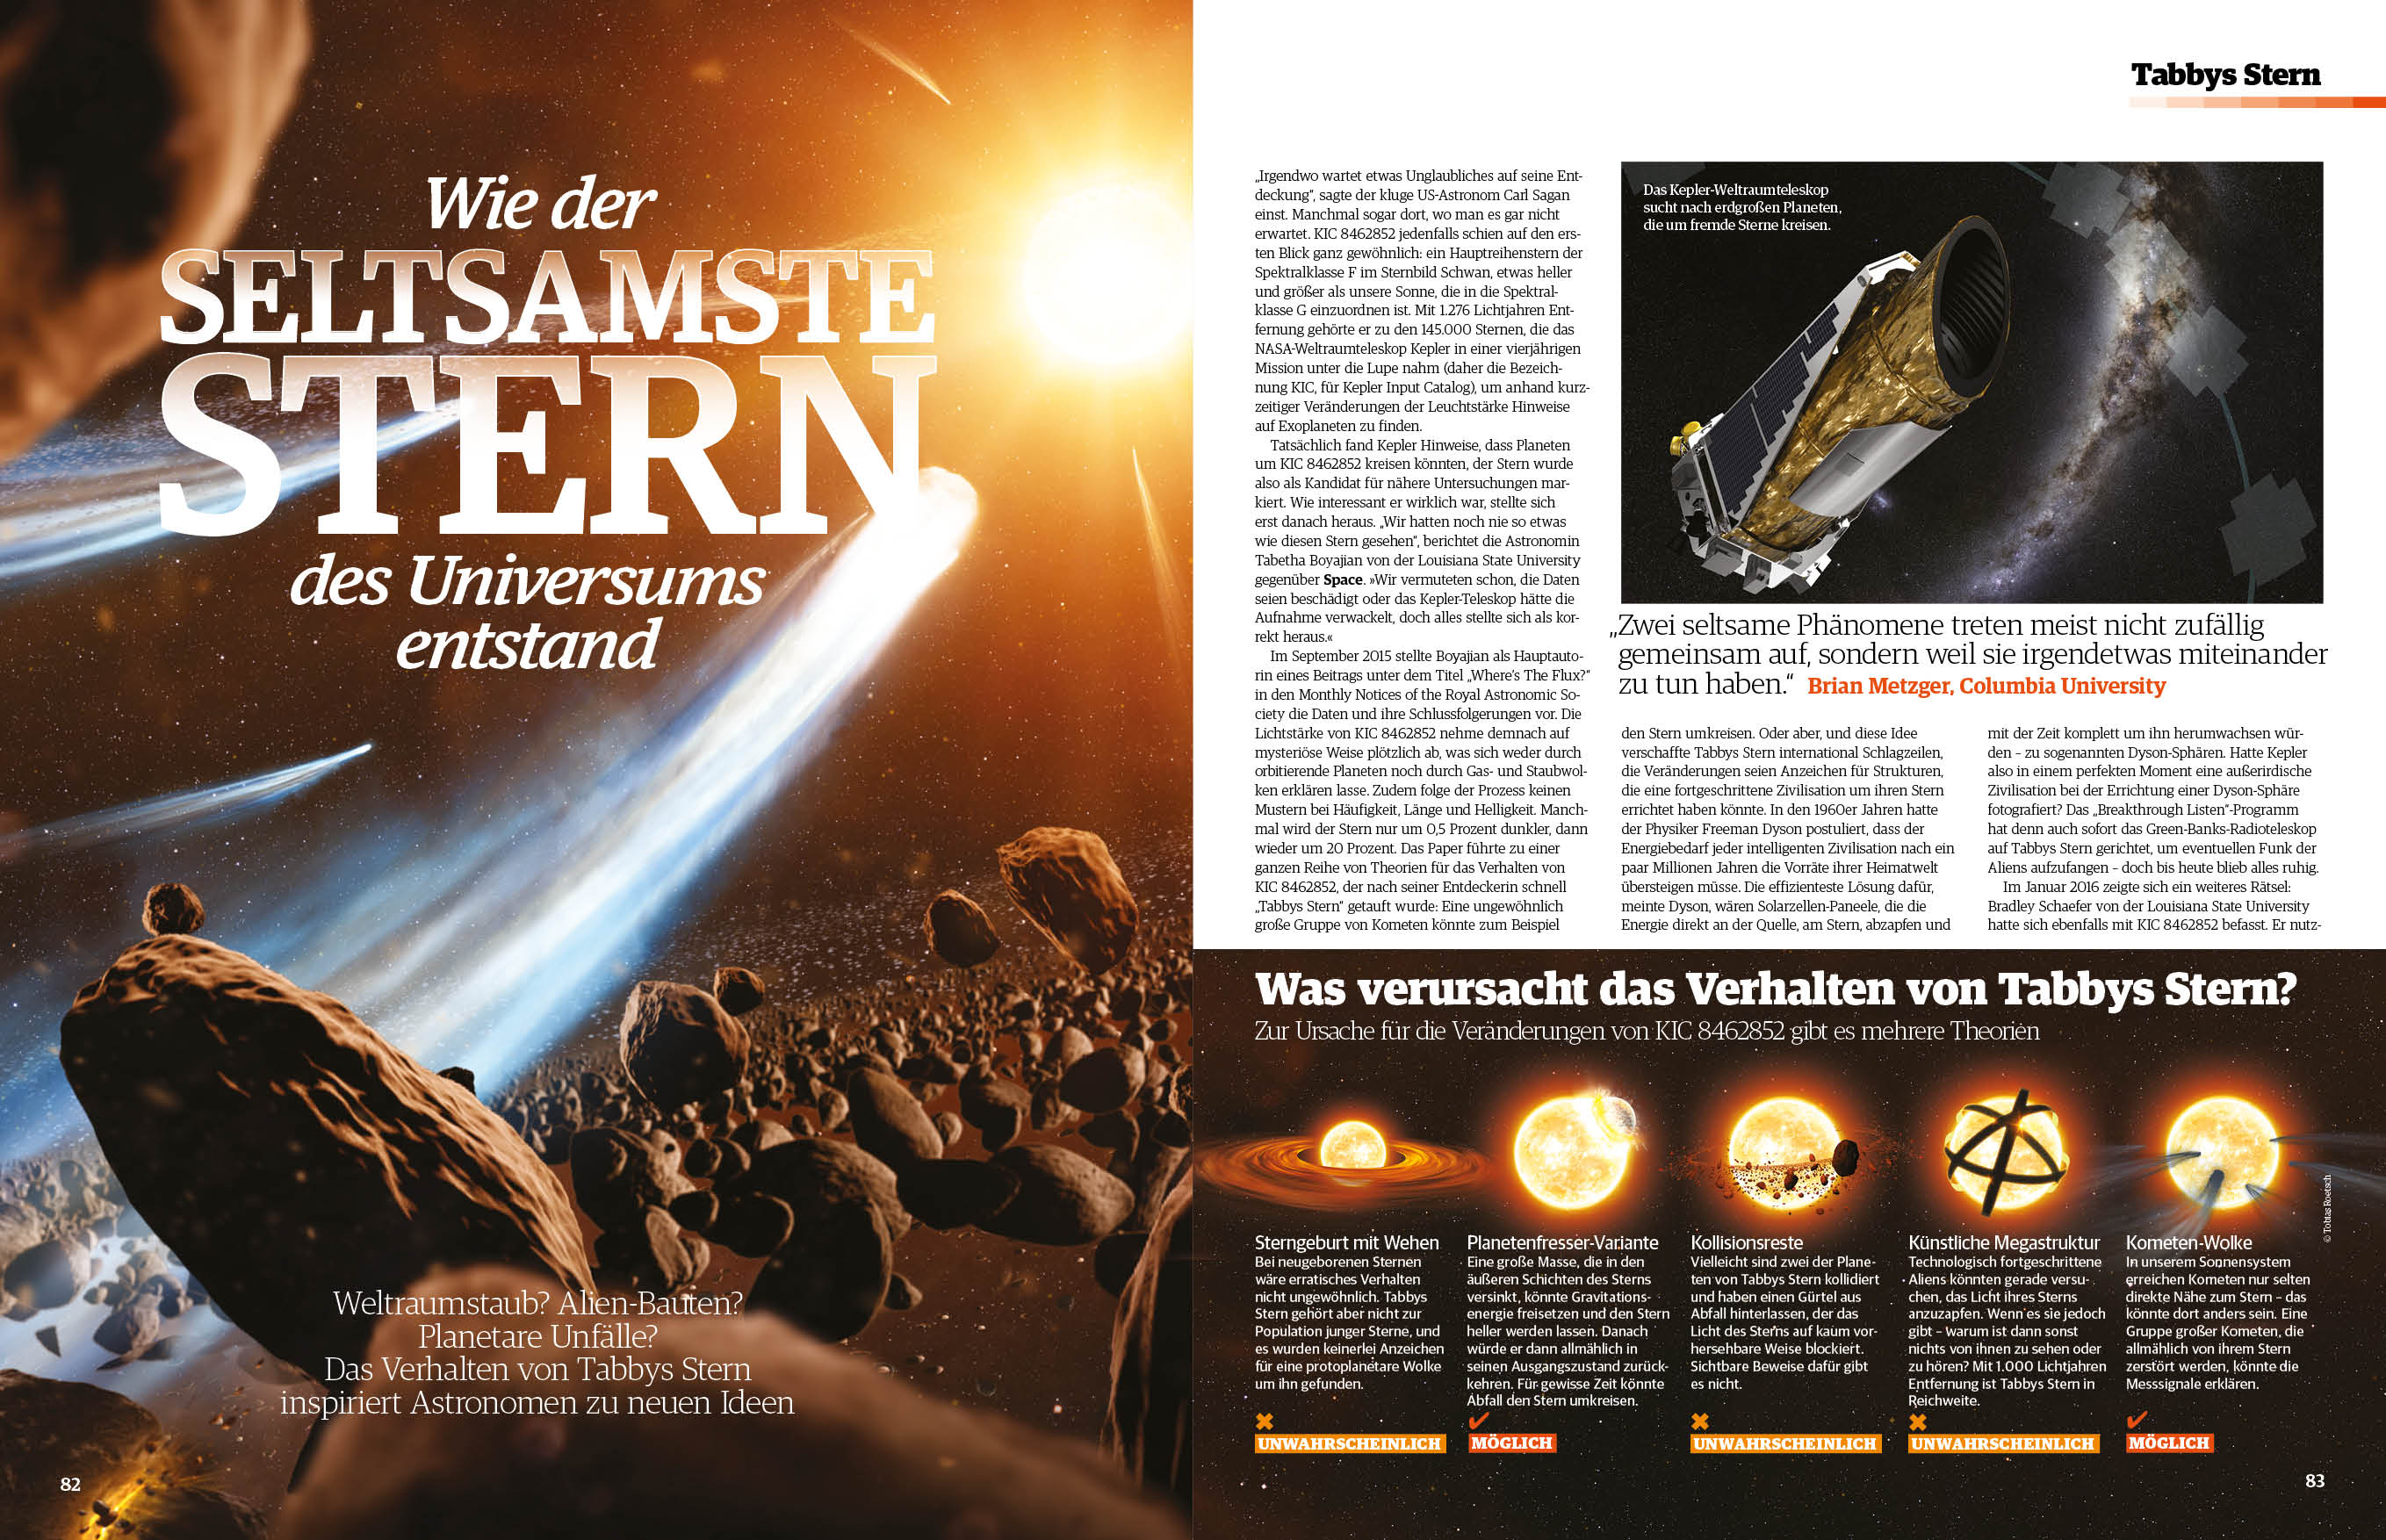 Space Weltraum Magazin 4/2017